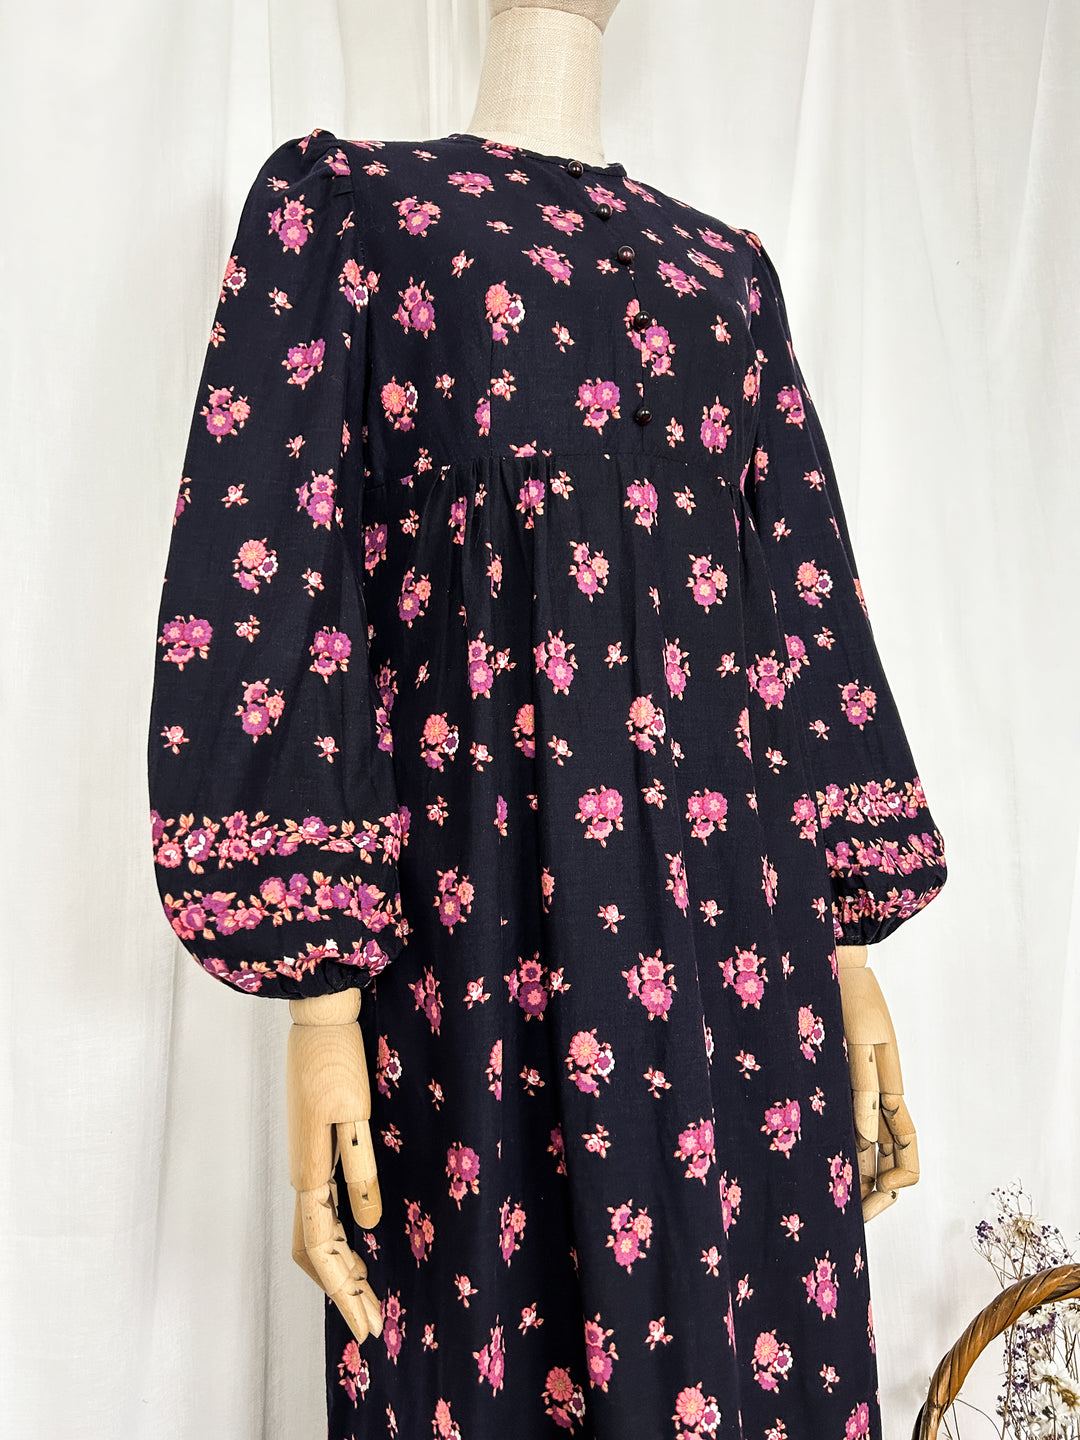 The Bloomsbury ~ Gorgeous 1970s cotton dark floral prairie dress